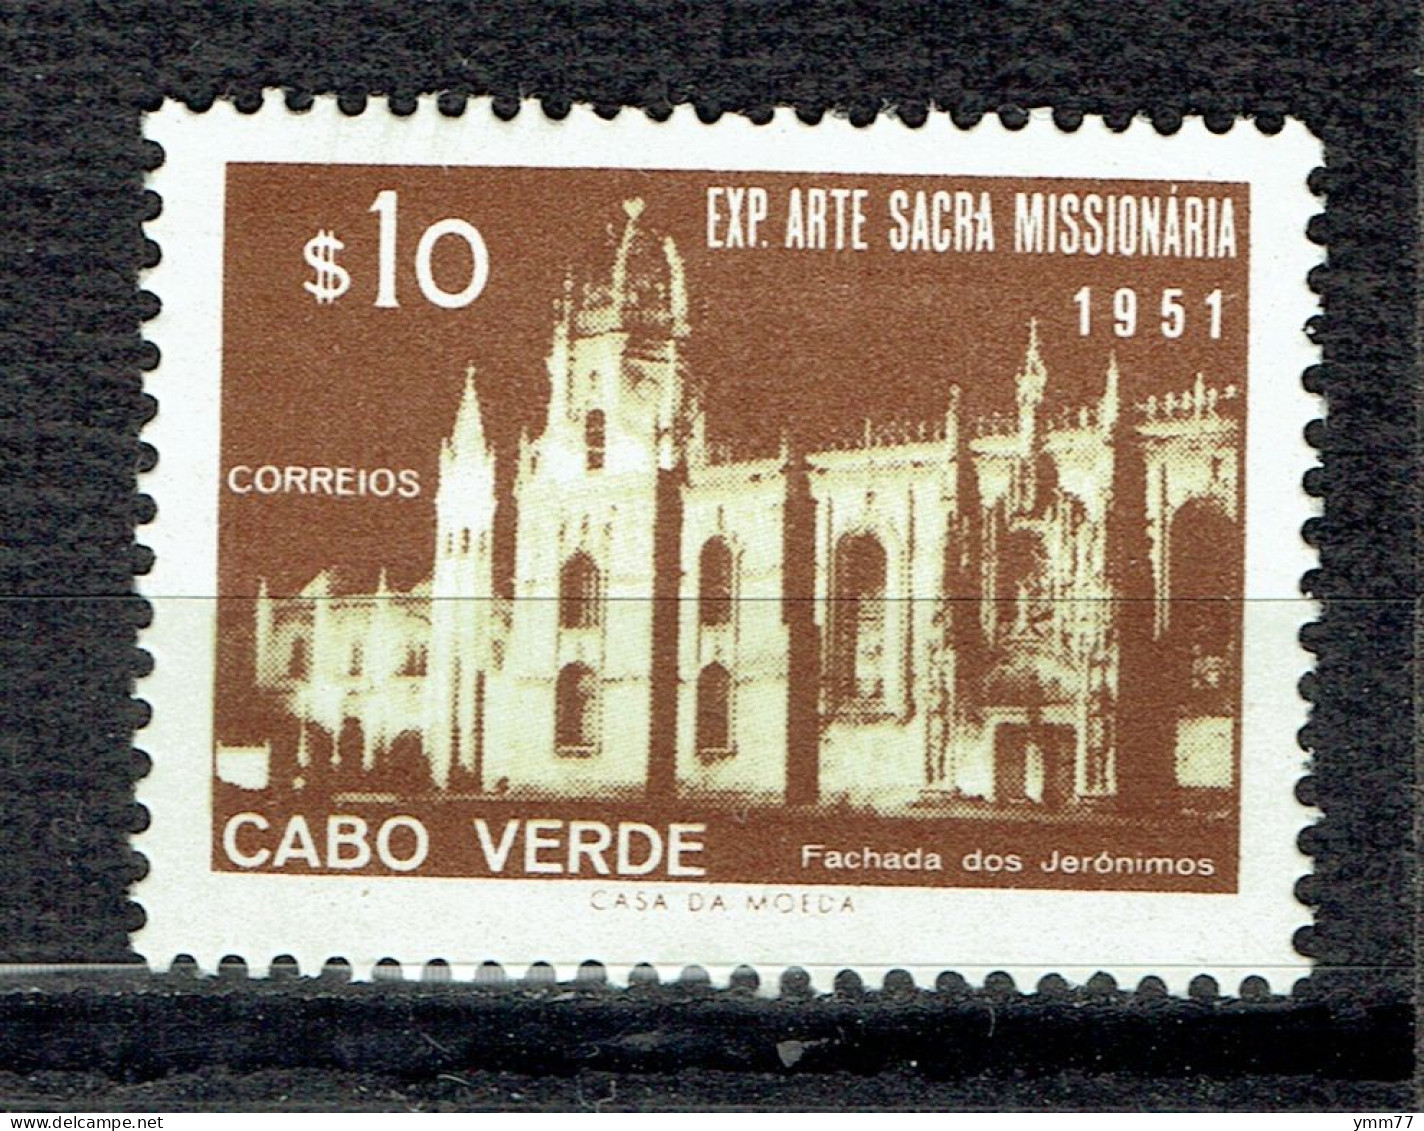 Exposition D'art Missionnaire à Lisbonne : Couvent Des Jéronimes - Cap Vert